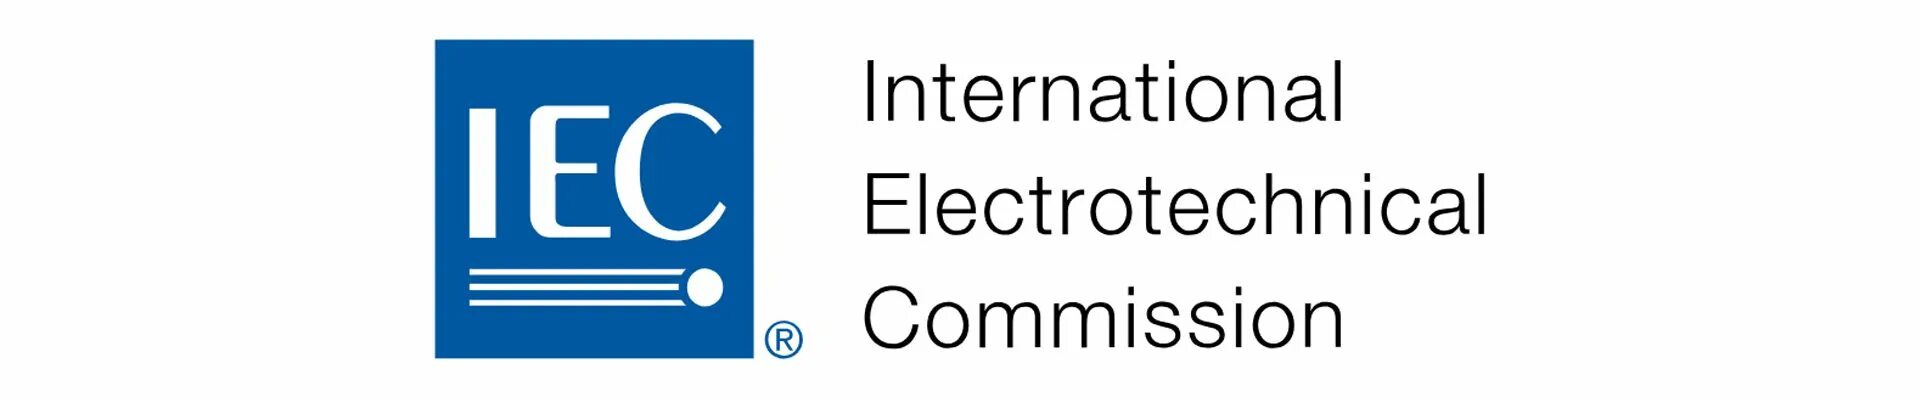 Международная электротехническая комиссия. International Electrotechnical Commission (Международная электротехническая комиссия). IEC. МЭК (IEC). IEC логотип.